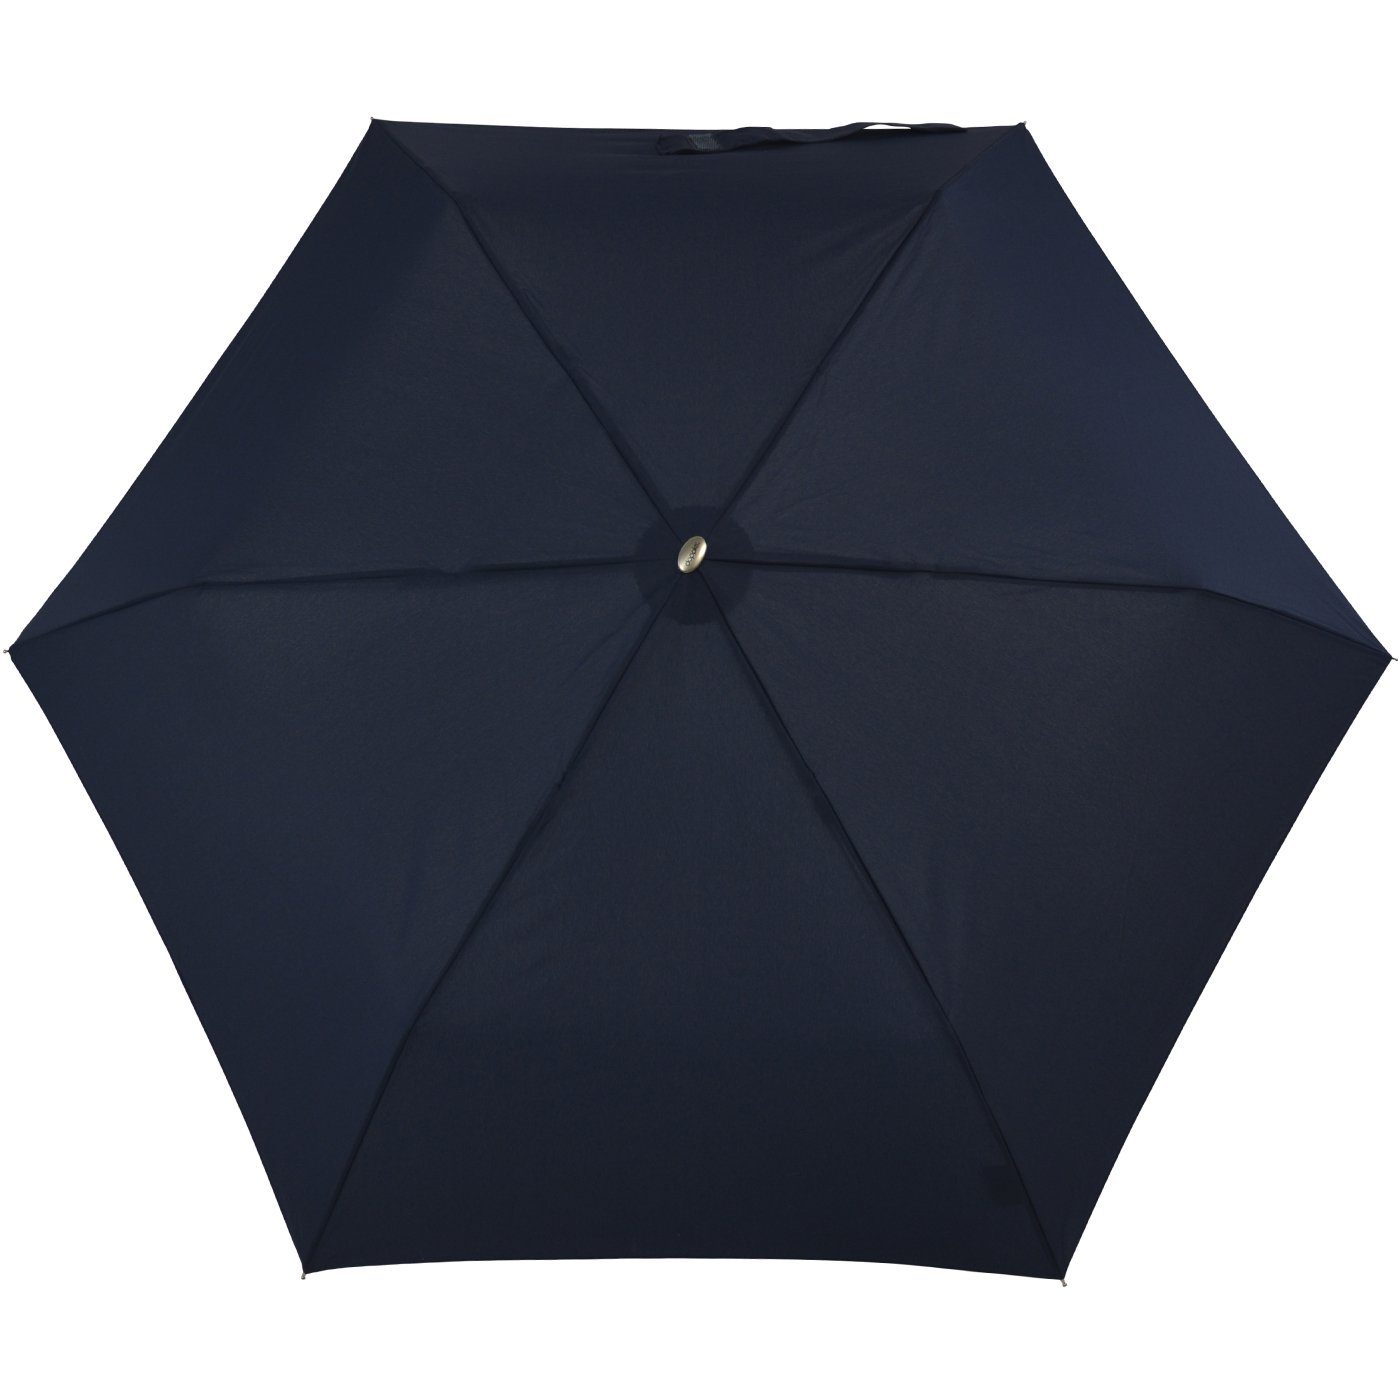 Tasche, Langregenschirm ein flacher Schirm jede Begleiter treue überall und für leichter doppler® findet dieser Platz